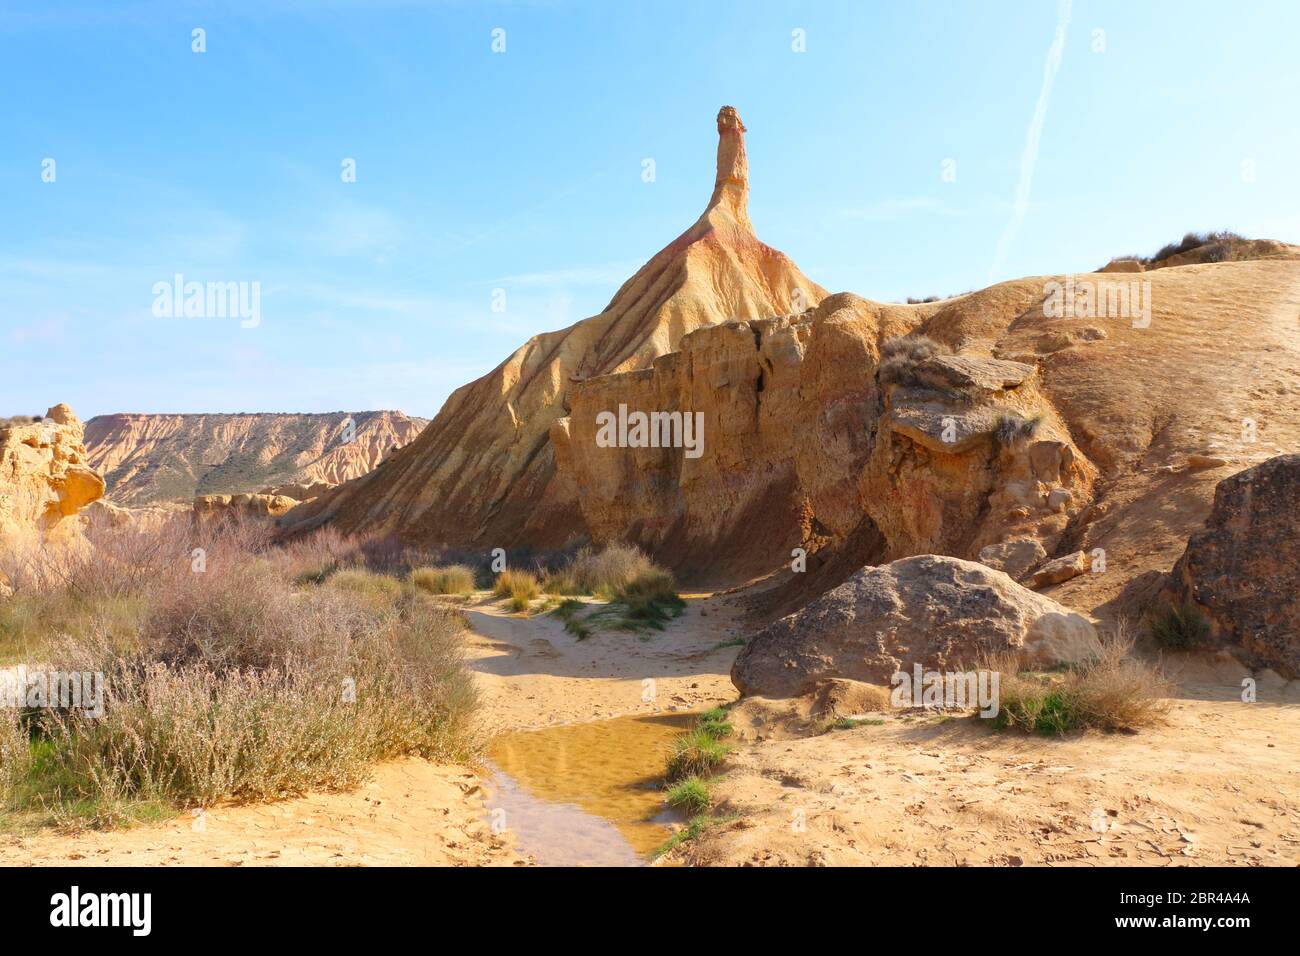 Vista panoramica del Castil de Tierra, il simbolo impressionante della regione semi-desertica naturale Bardenas Reales, UNESCO Biosfera Reserve, Navarra, Spagna Foto Stock